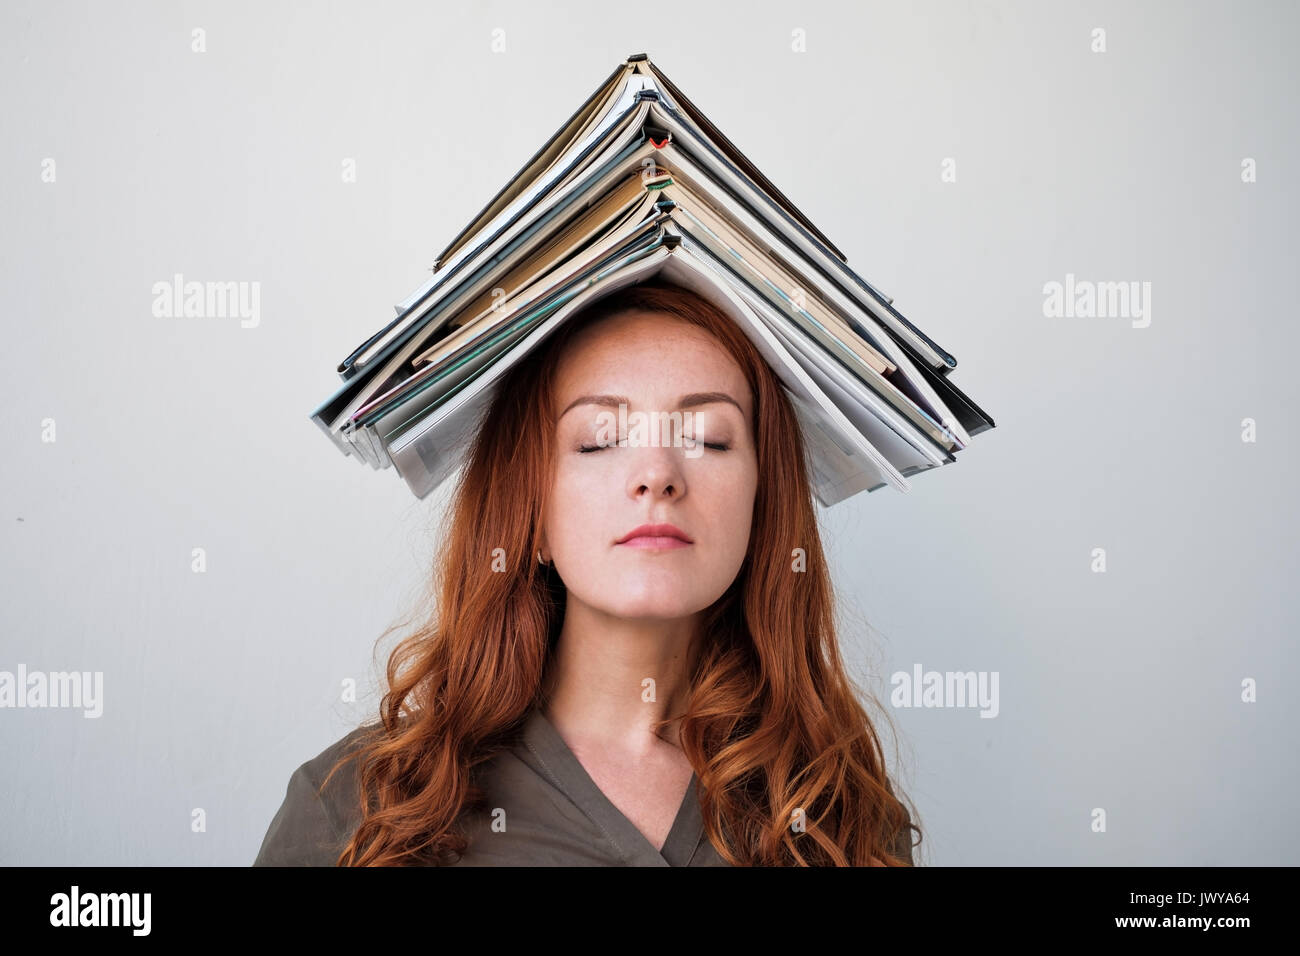 Attraktive junge Frau Balancing ein Buch auf dem Kopf, weißer Hintergrund Stockfoto